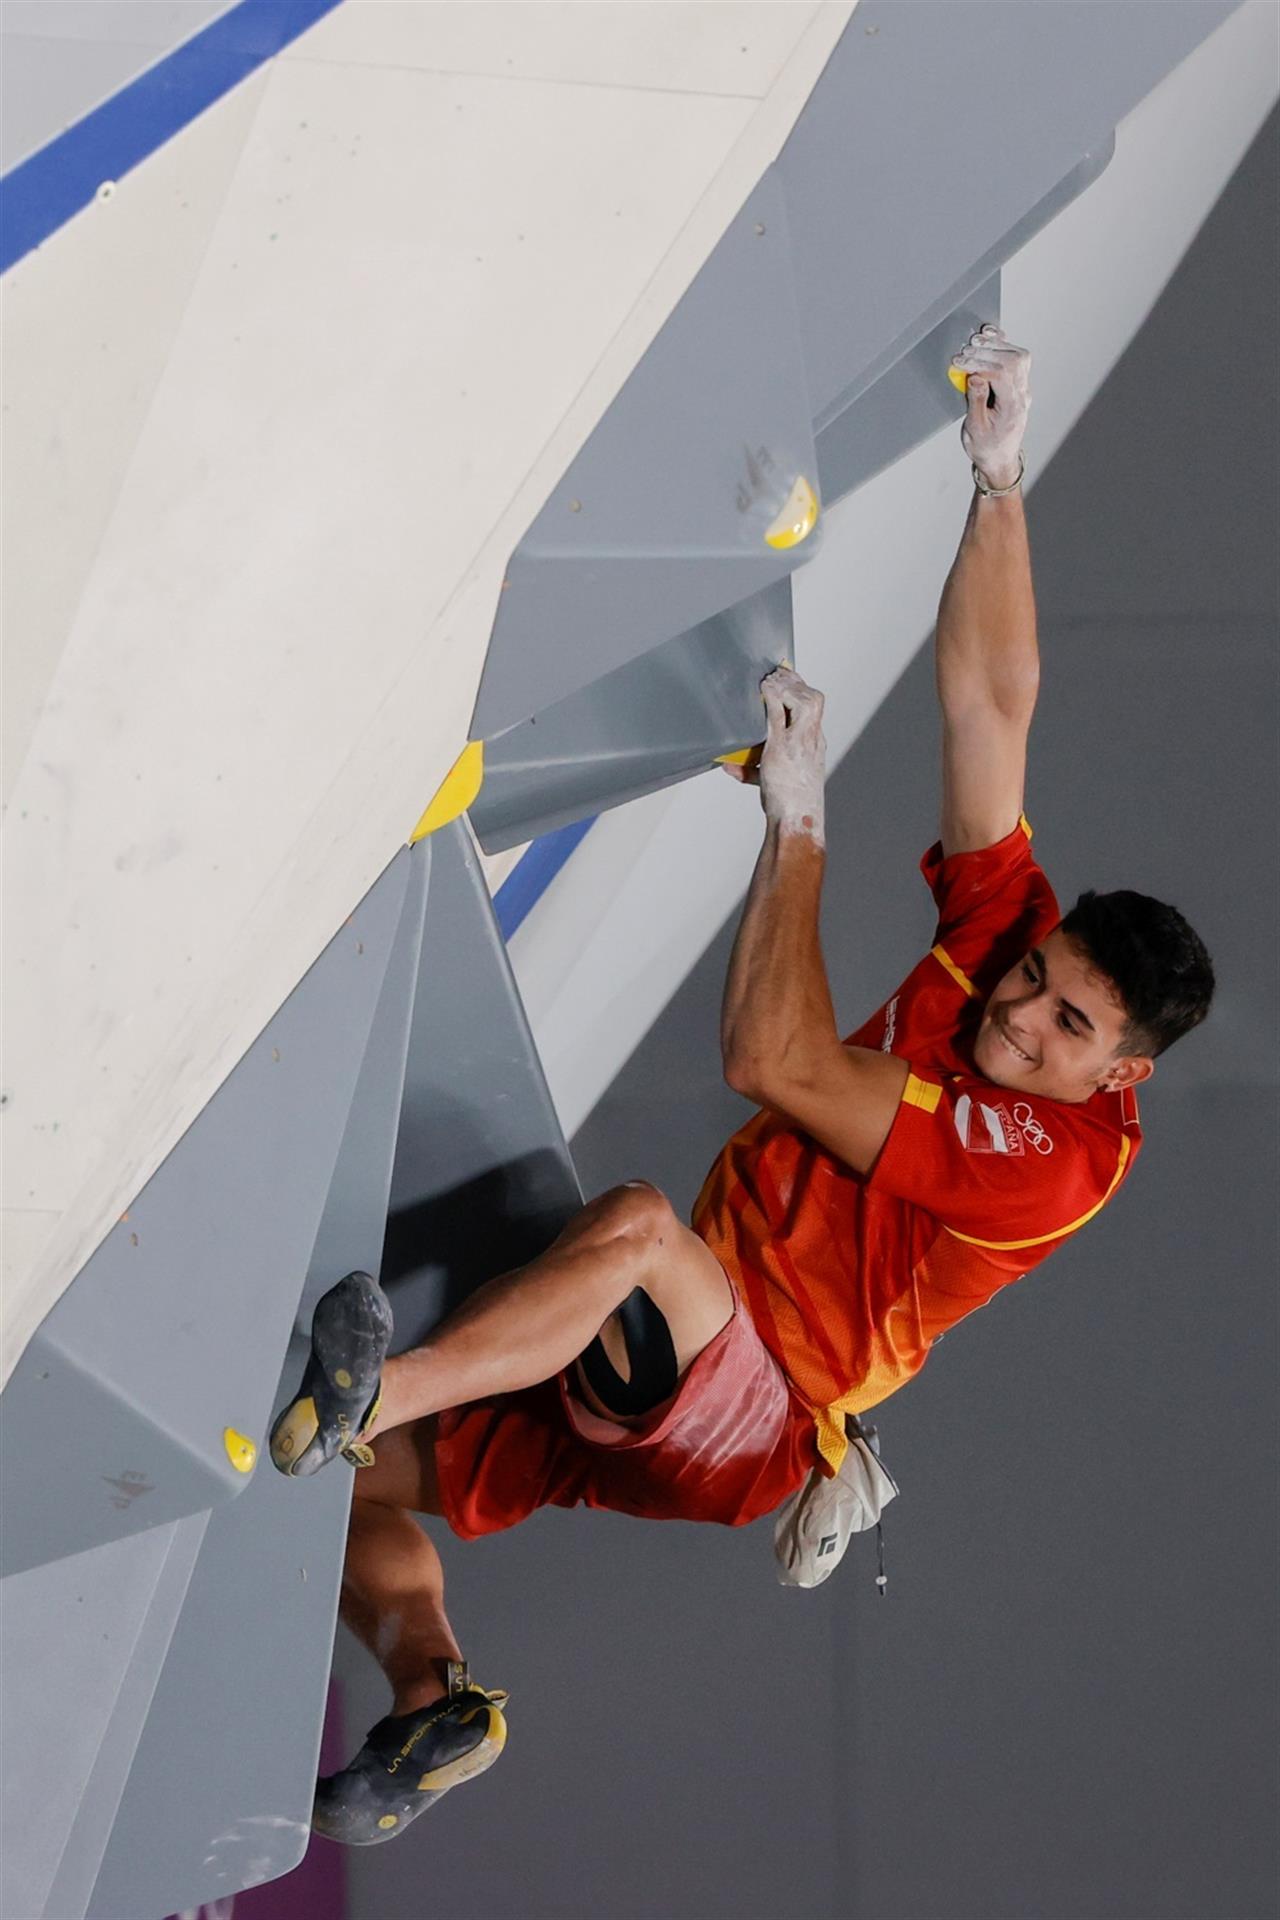  El español Alberto Ginés durante la prueba de escalada en bloque o búlder durante los Juegos Olímpicos 2020, este jueves en el Parque de Deportes Urbanos de Aomi en Tokio (Japón)